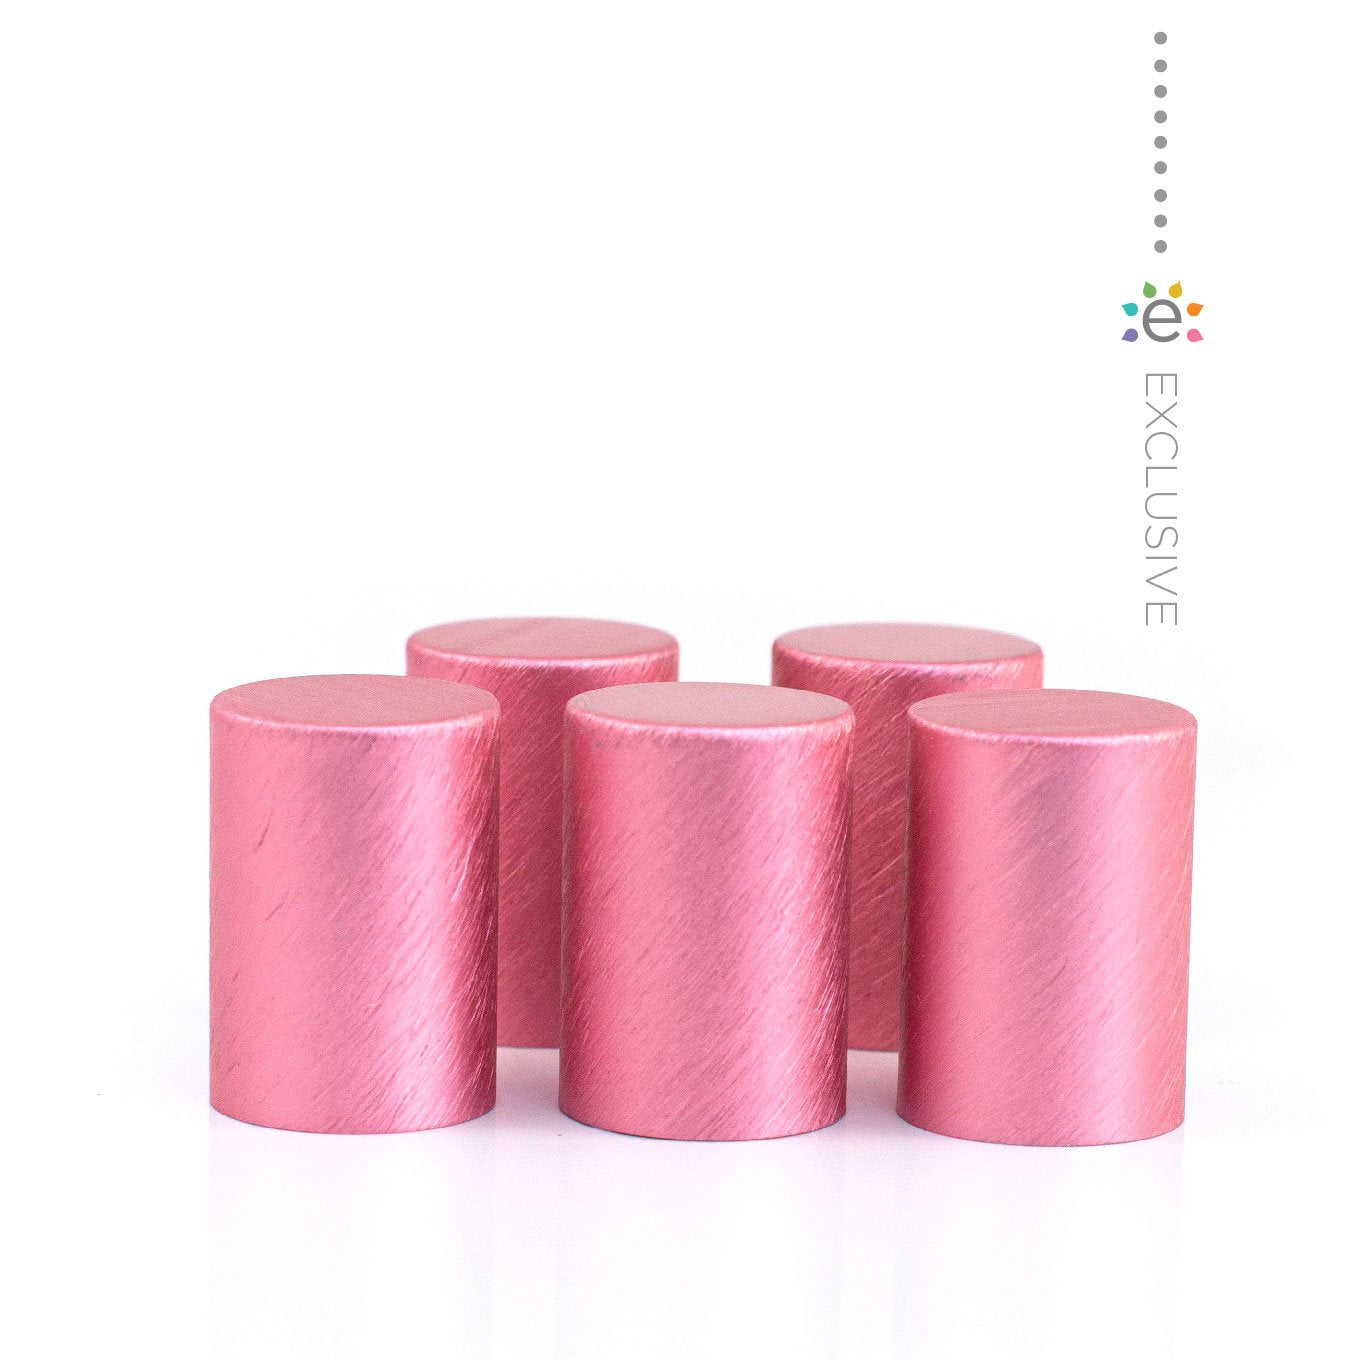 Fém kupakok (5 darab) Roll-on üveghengerhez, Pink színben